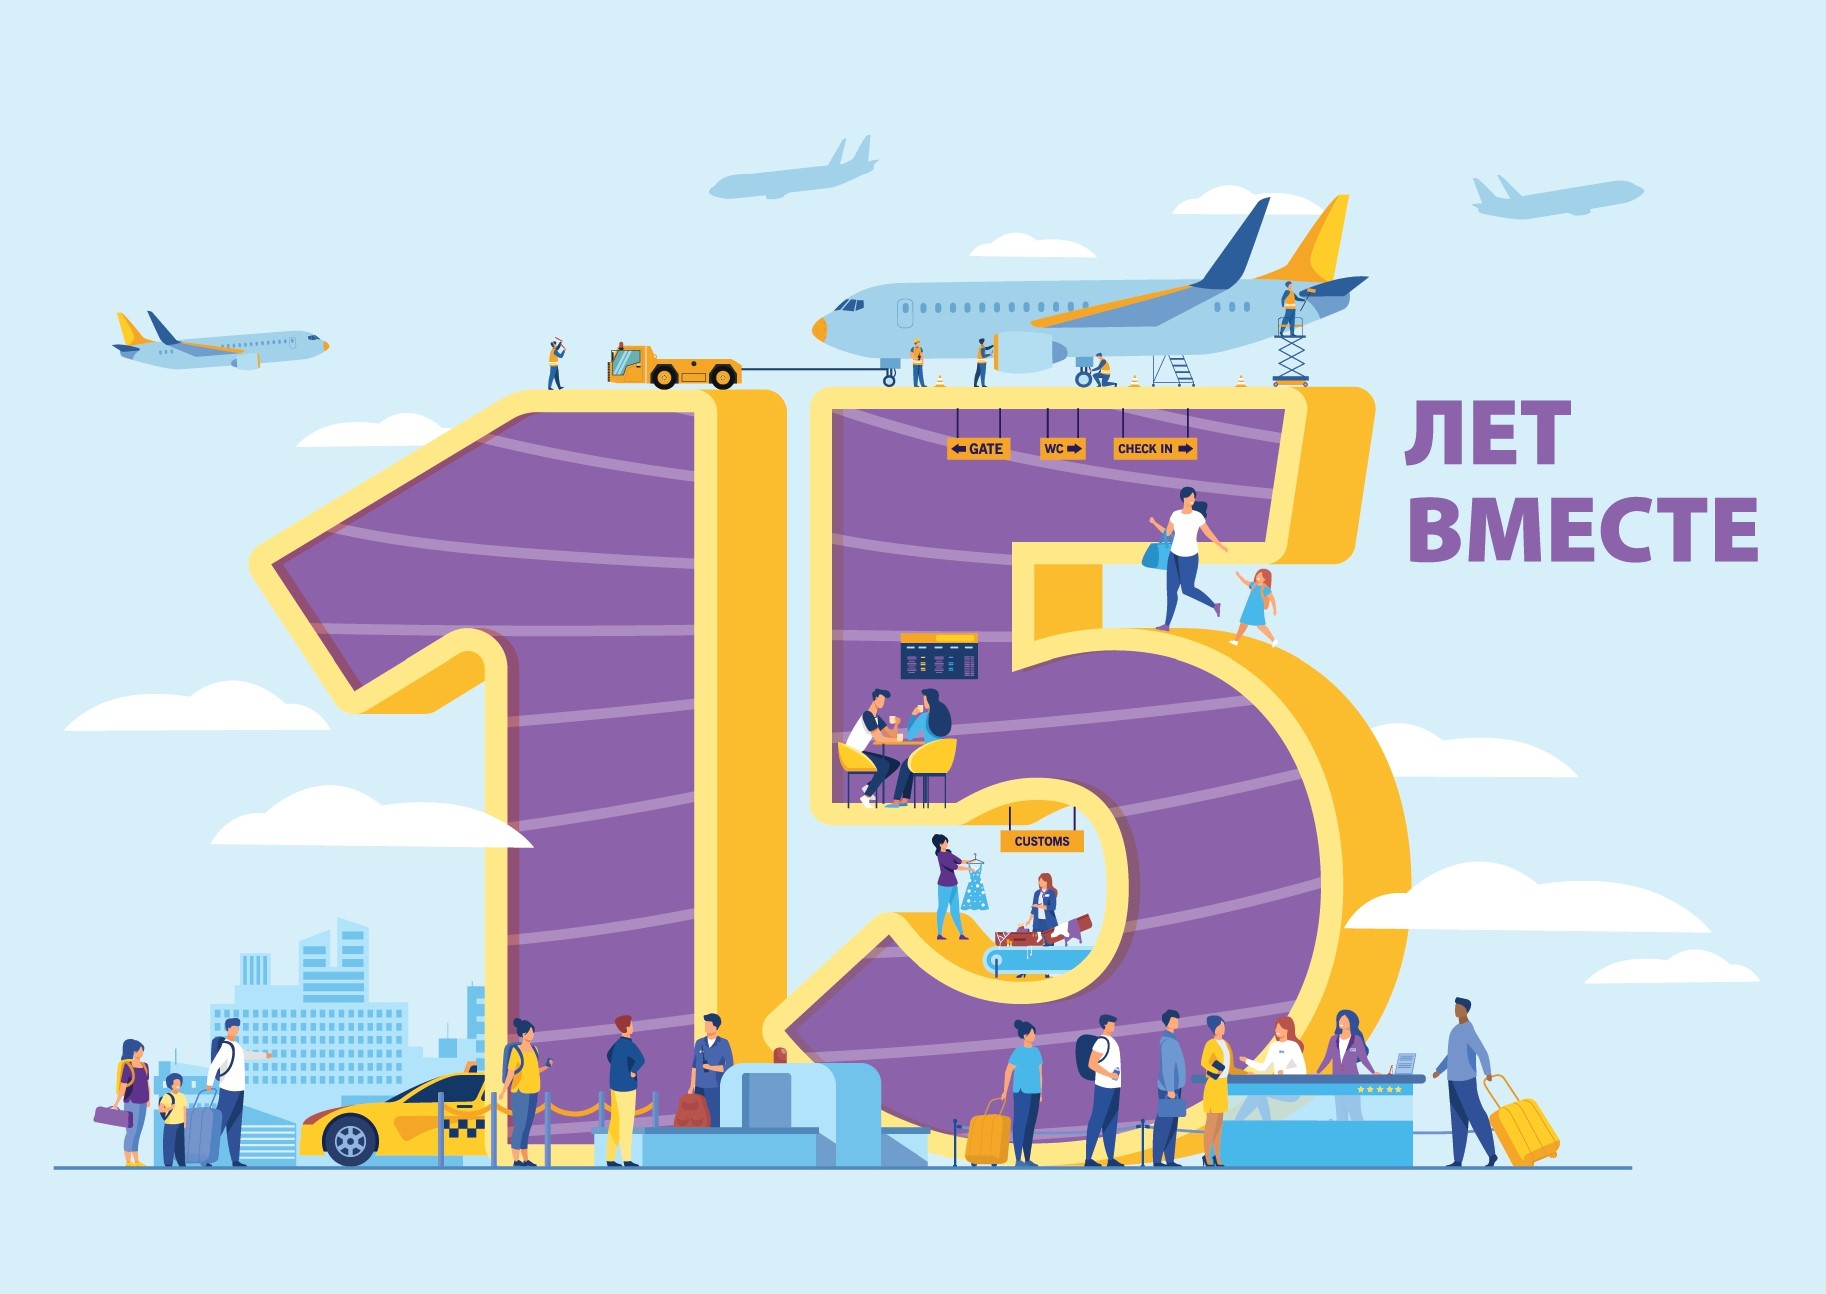 Международный аэропорт Владивосток сегодня отмечает юбилей - 15 лет со дня основания компании!